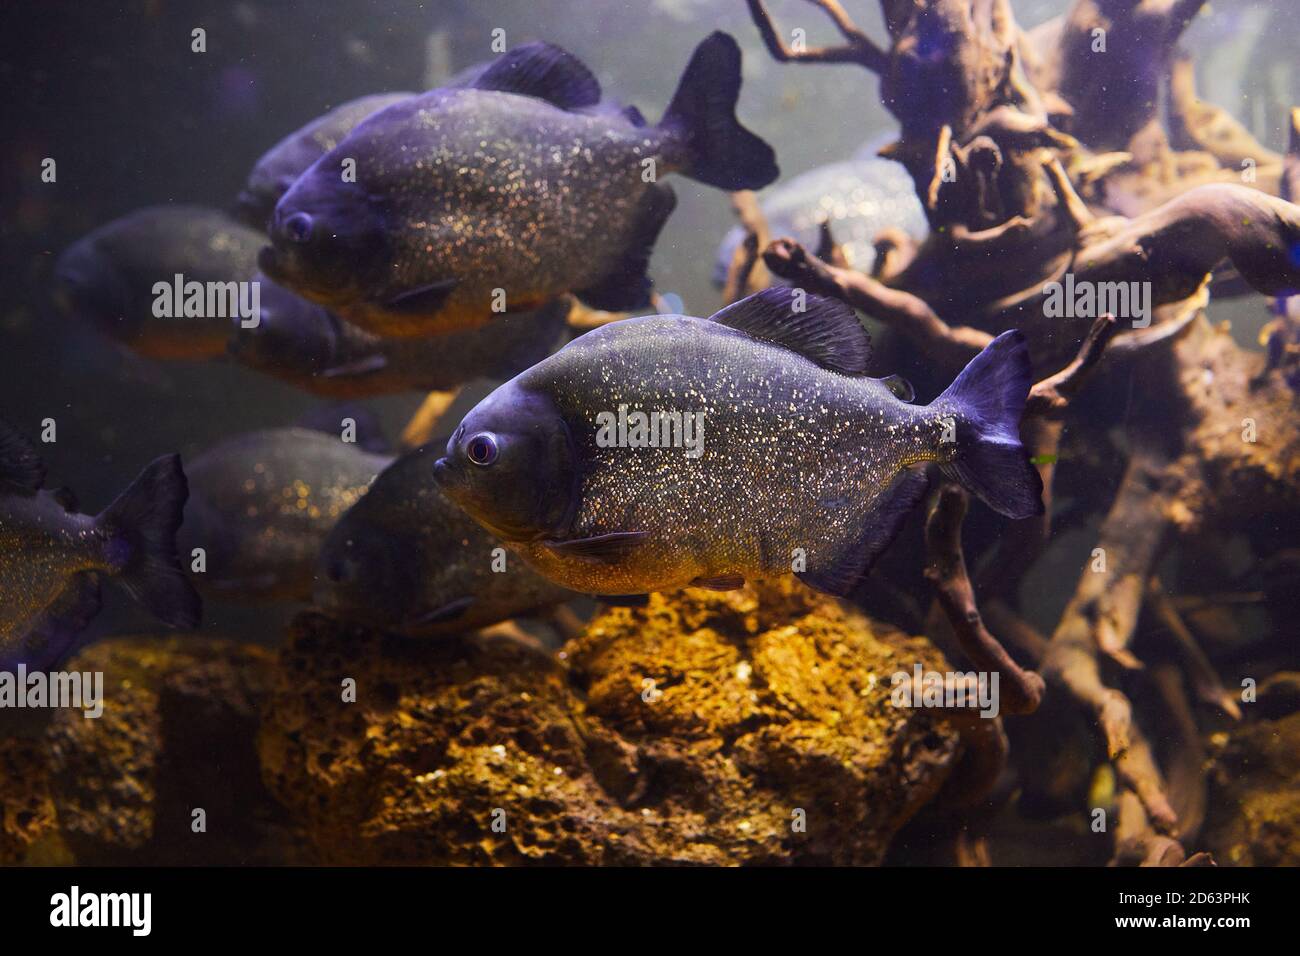 Pygocentrus nattereri, Piranha fish closeup in the aquarium Stock Photo